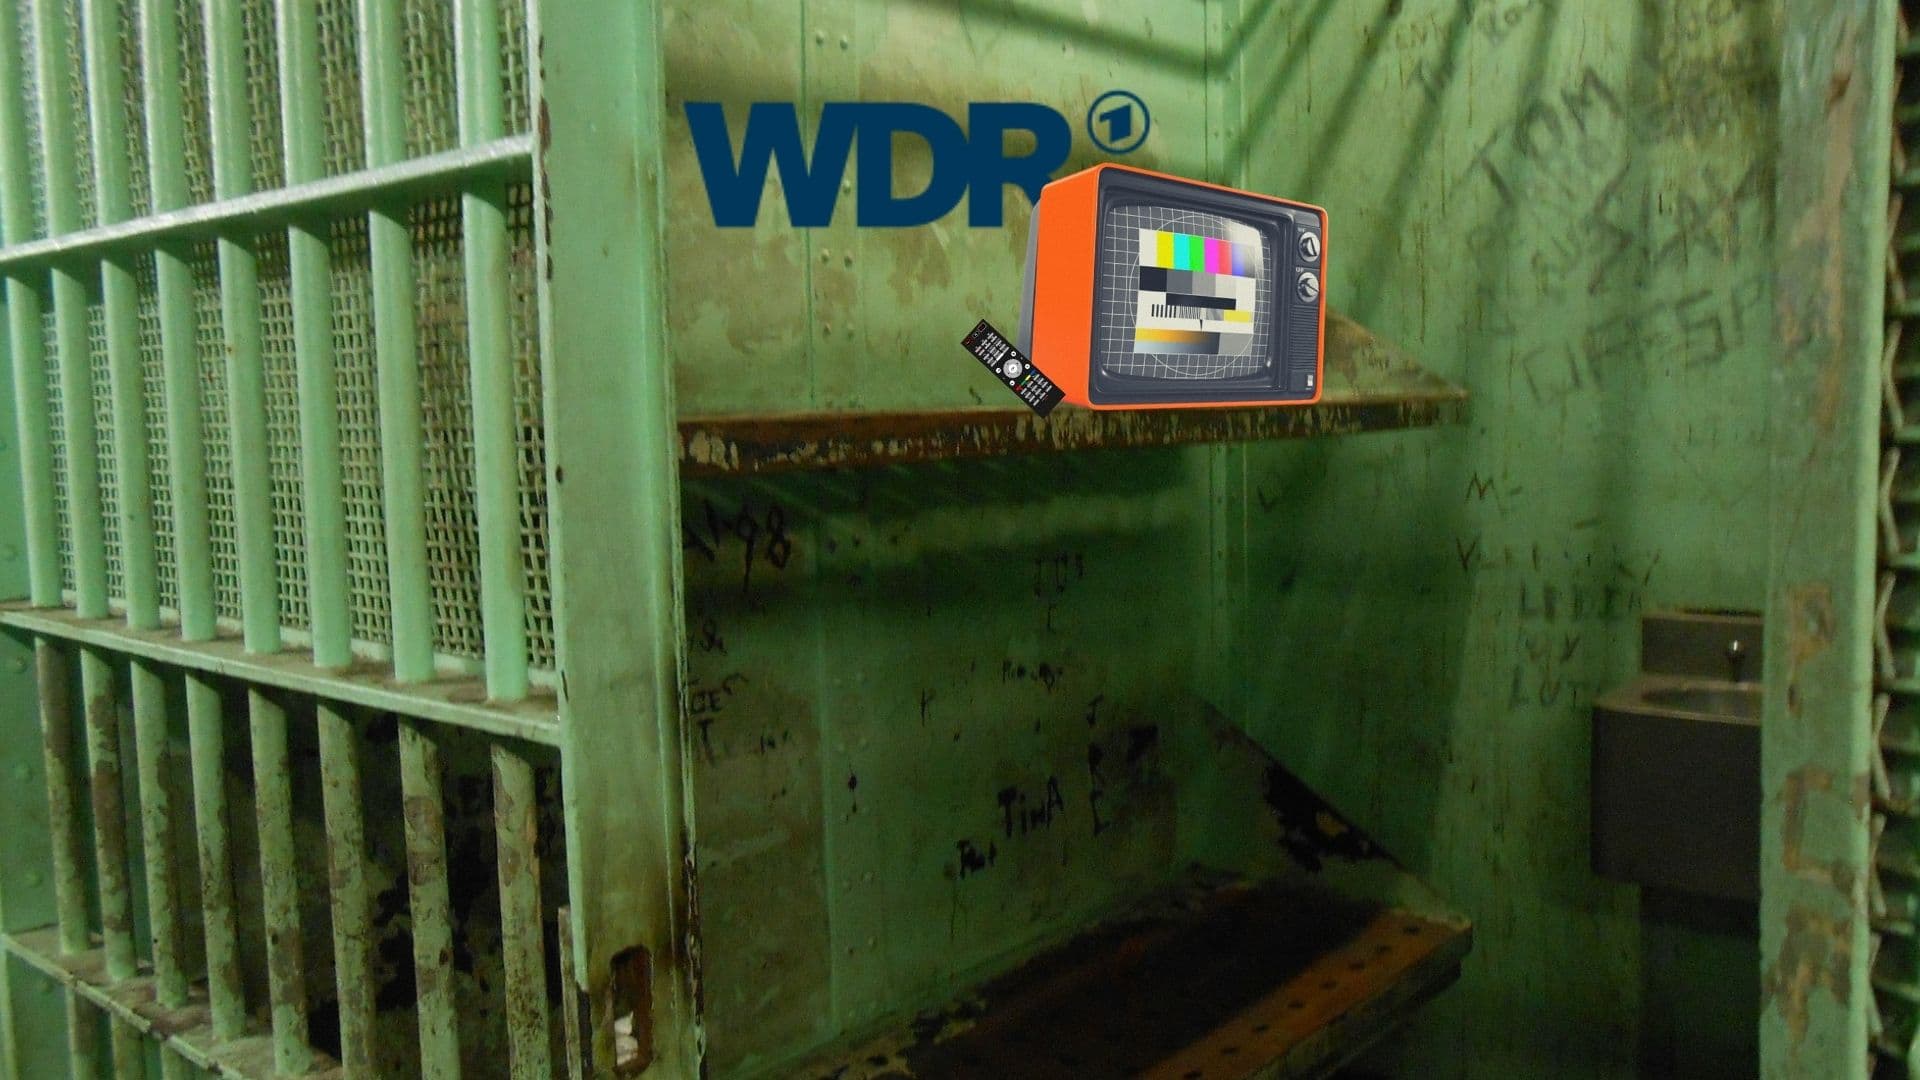 Bild für den Beitrag: WDR und Gefängnis: Rundfunk kostet